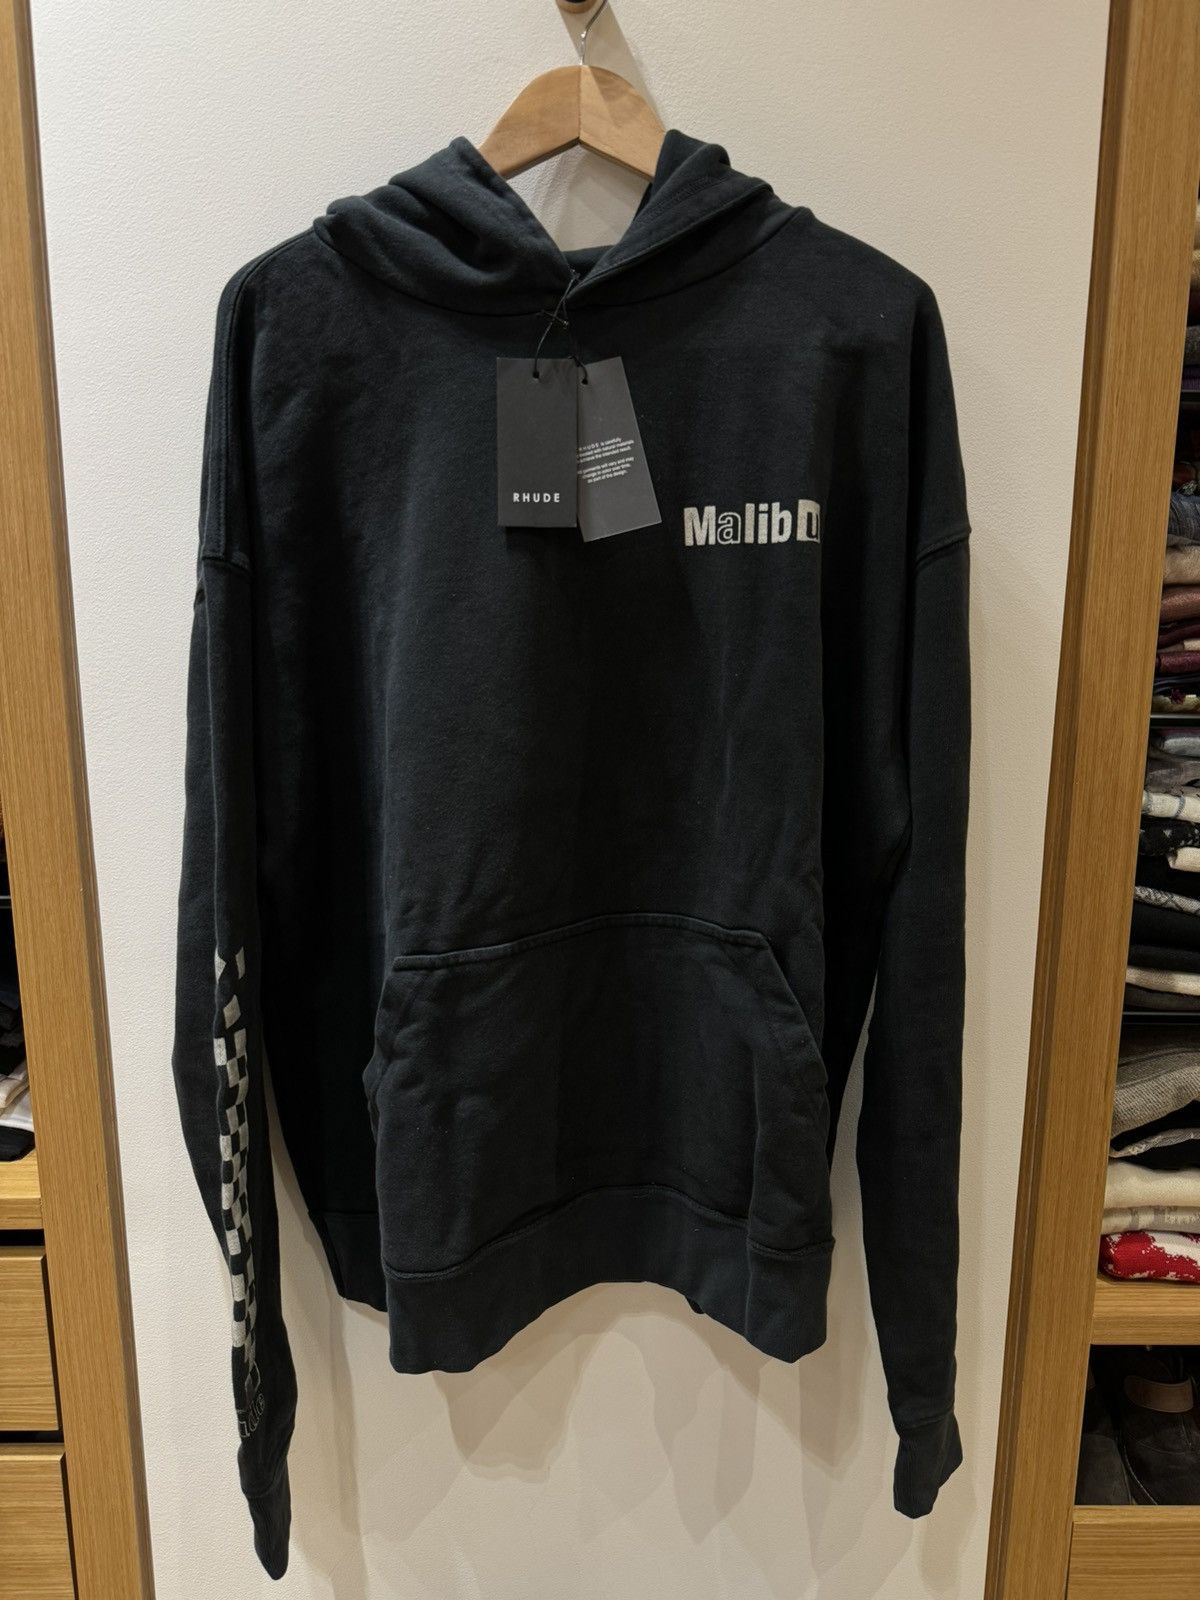 Rhude Rhude Malibu hoodie | Grailed